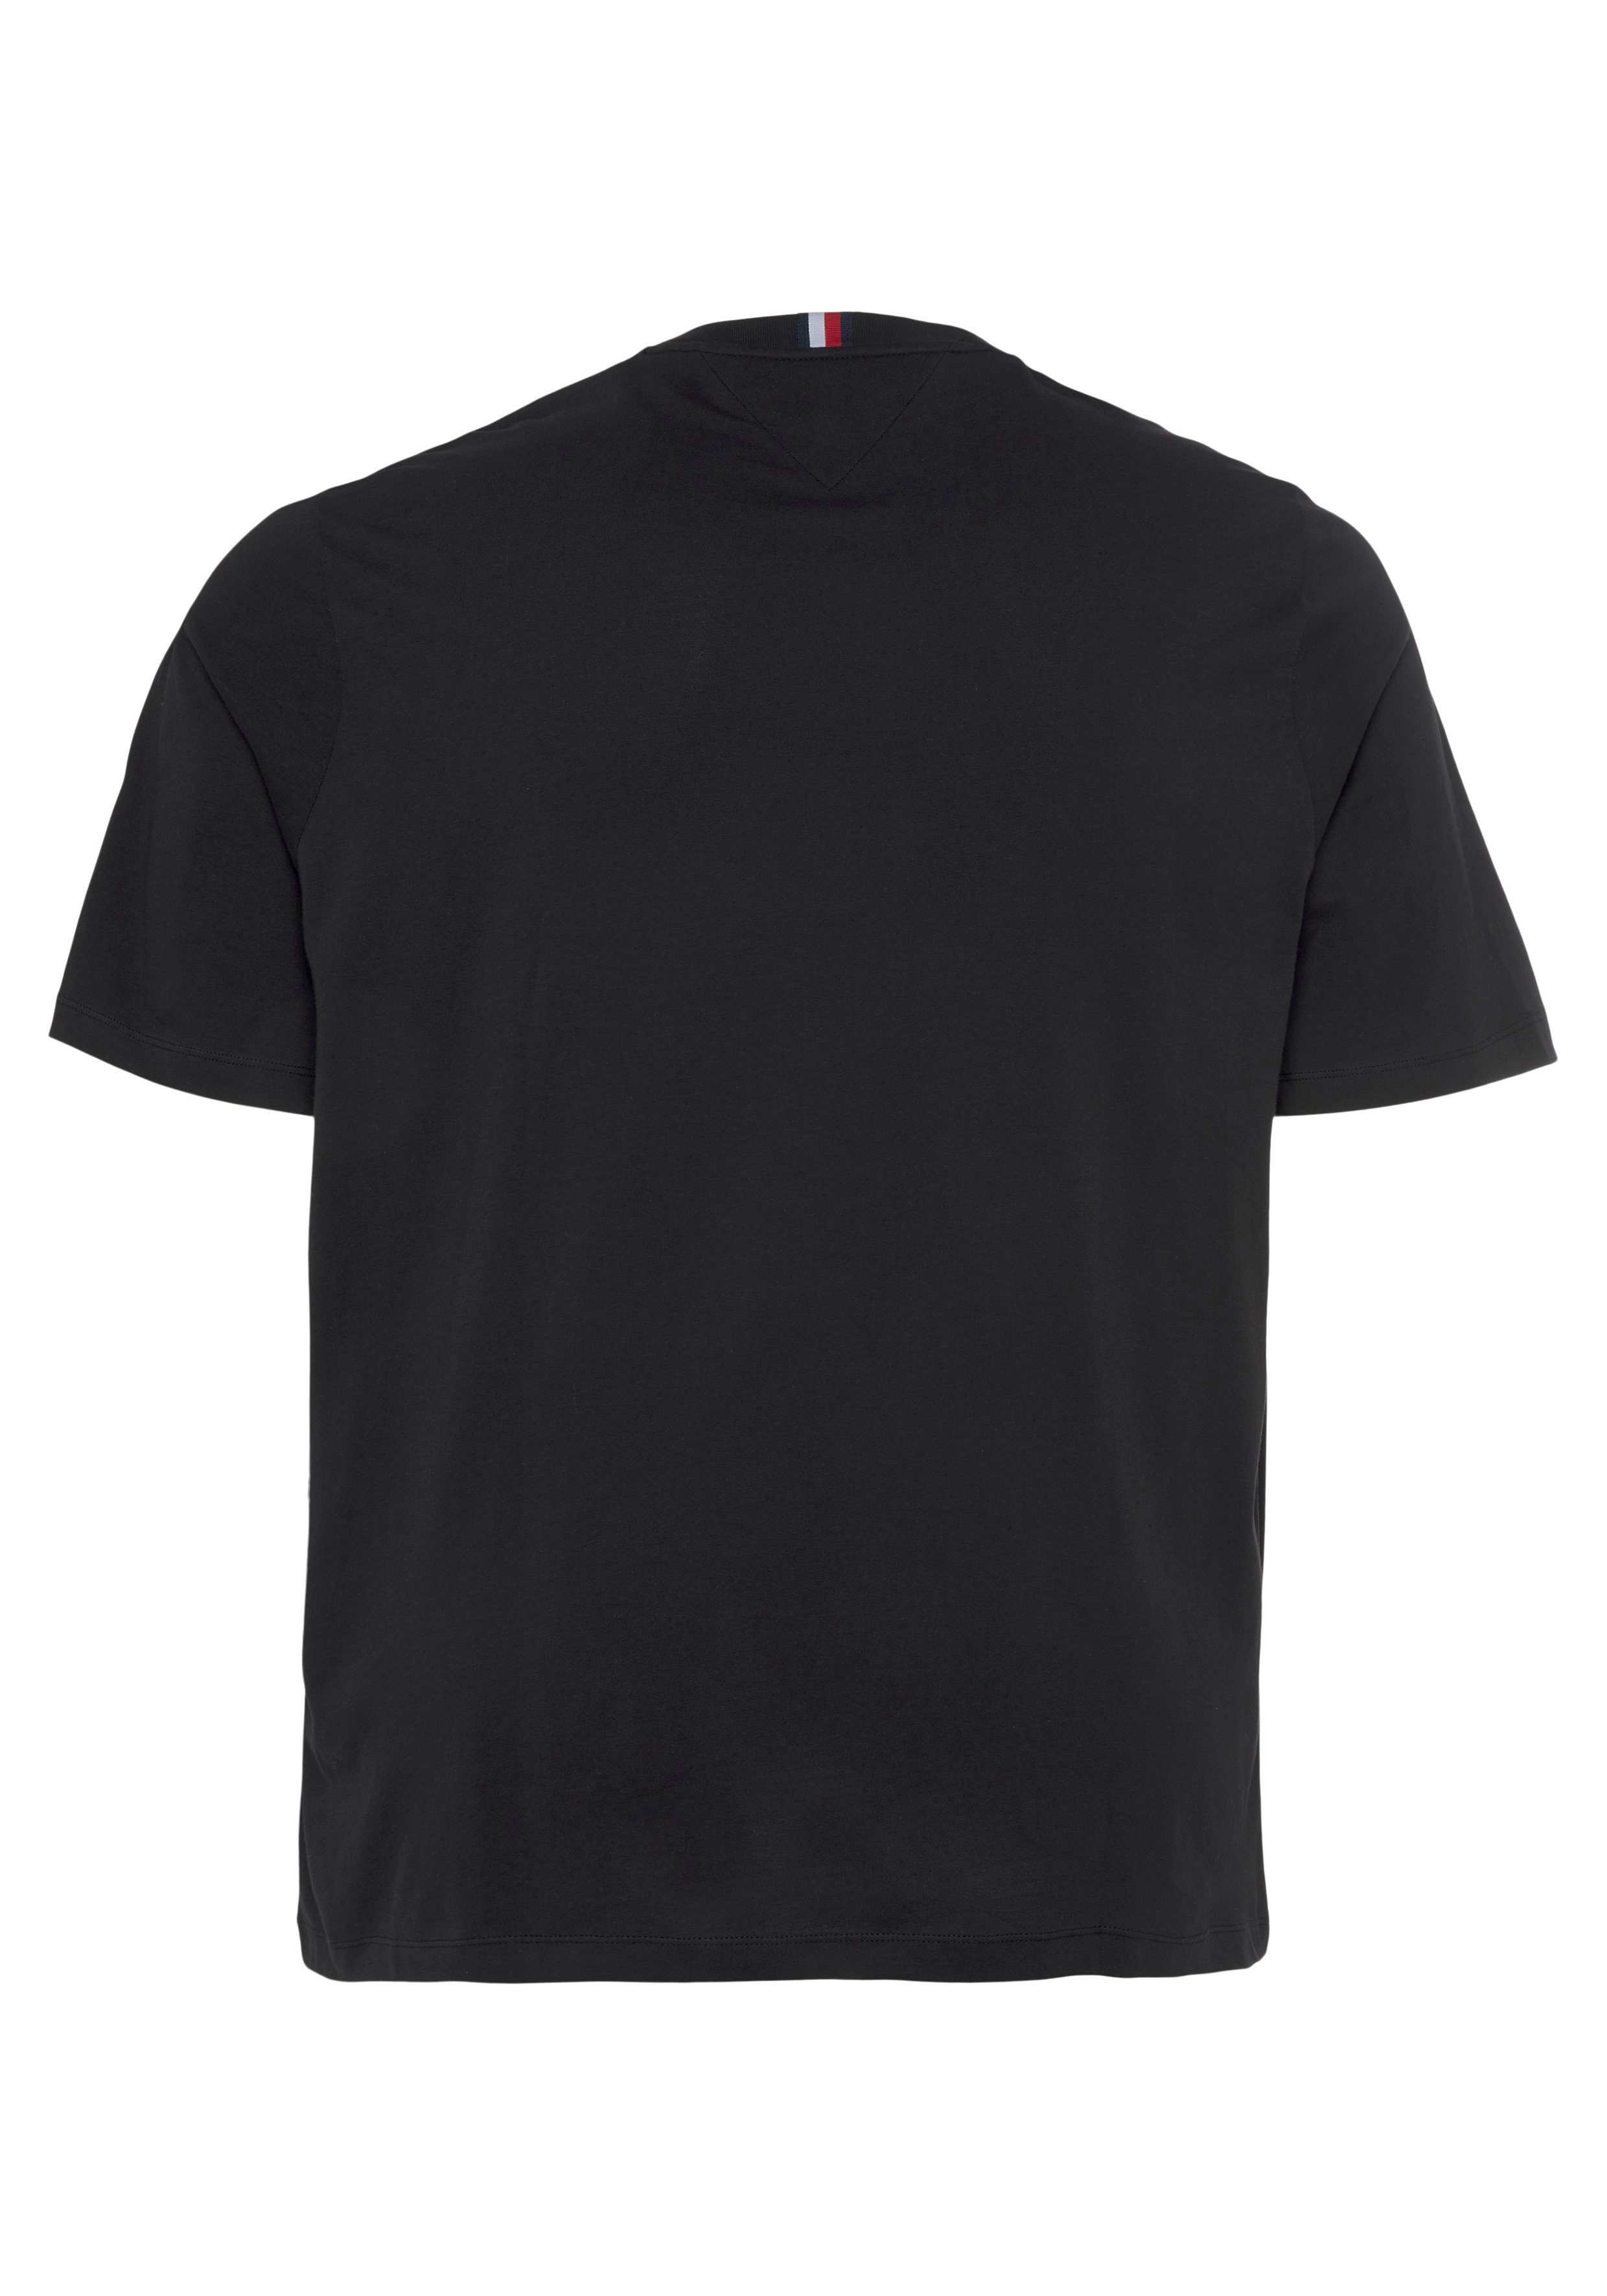 Black & TEE-B HILFIGER Tall REG BT-SHADOW Hilfiger T-Shirt Tommy Big